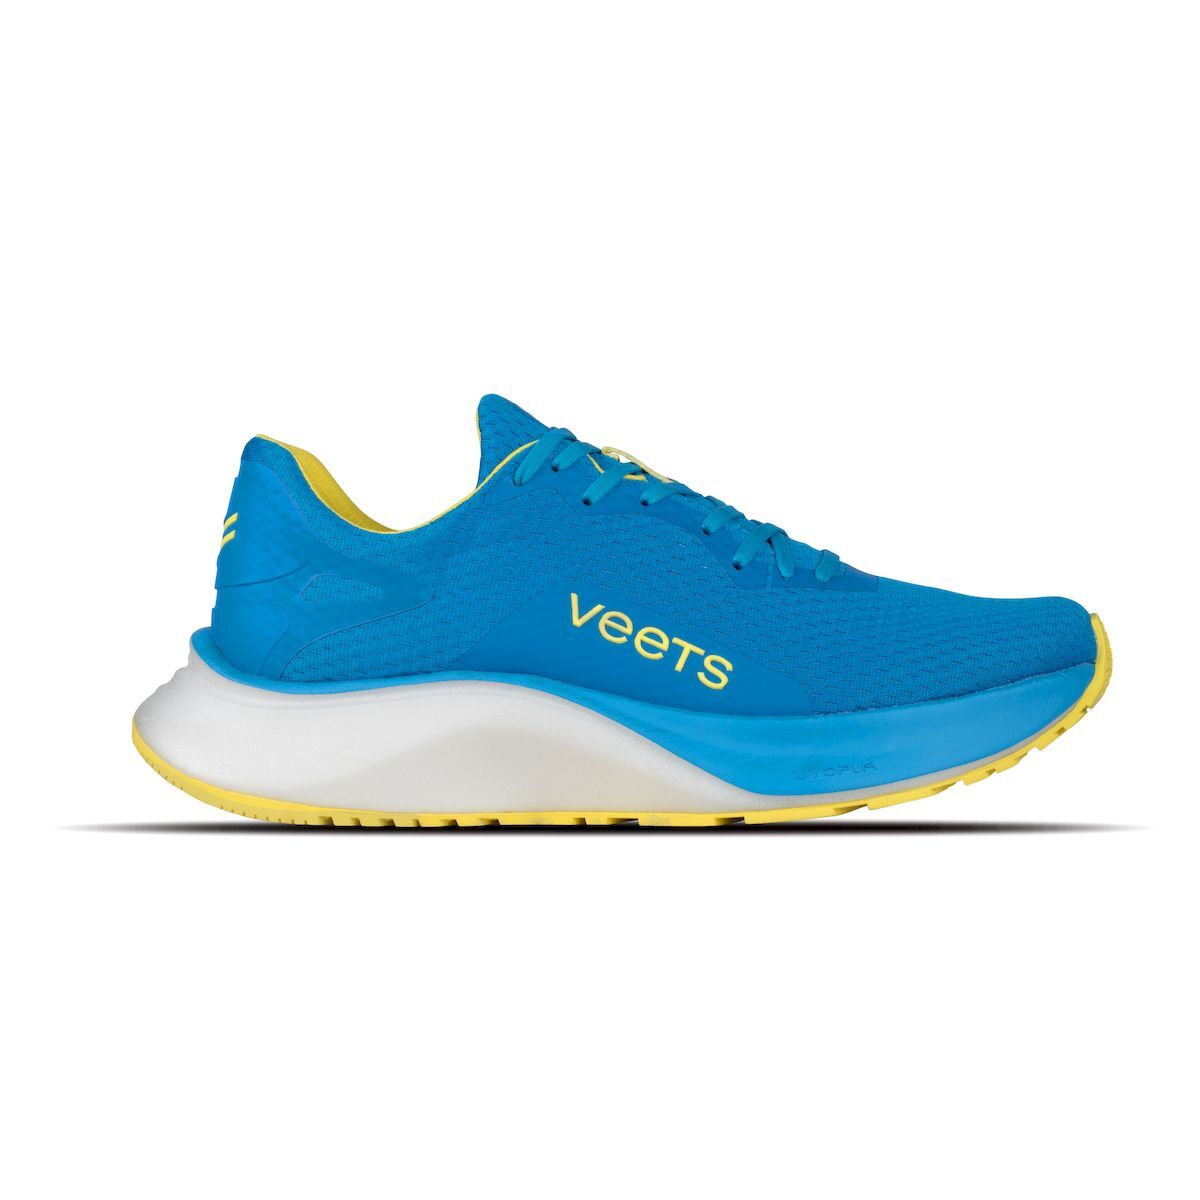 Veets Utopik MIF1 - Running shoes - Men's